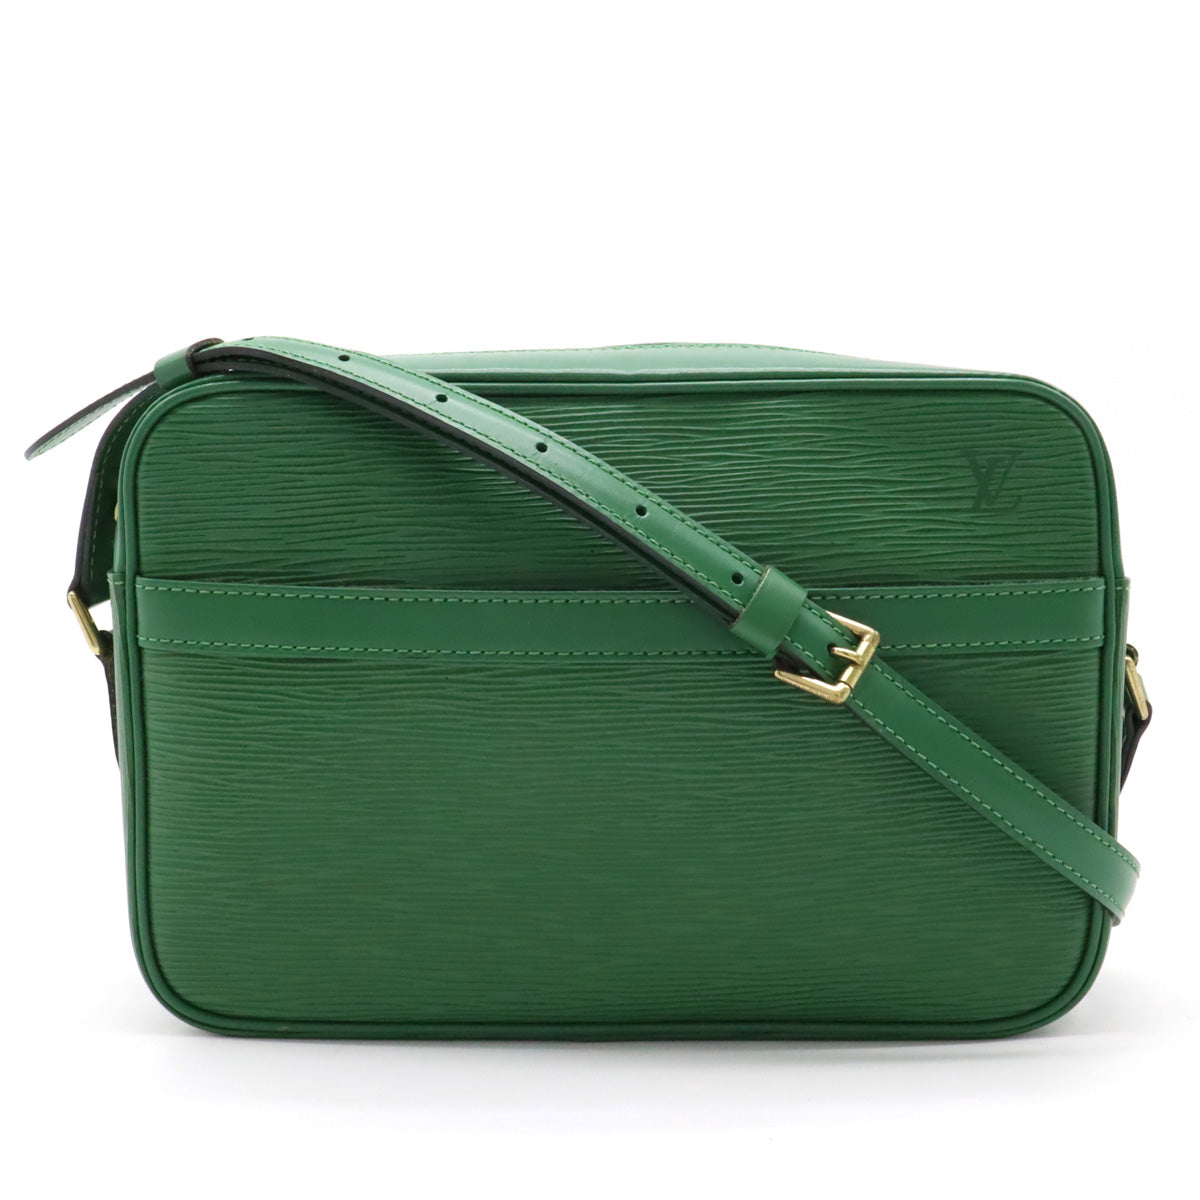 Authentic Louis Vuitton Epiline Handbag Business Bag Epi